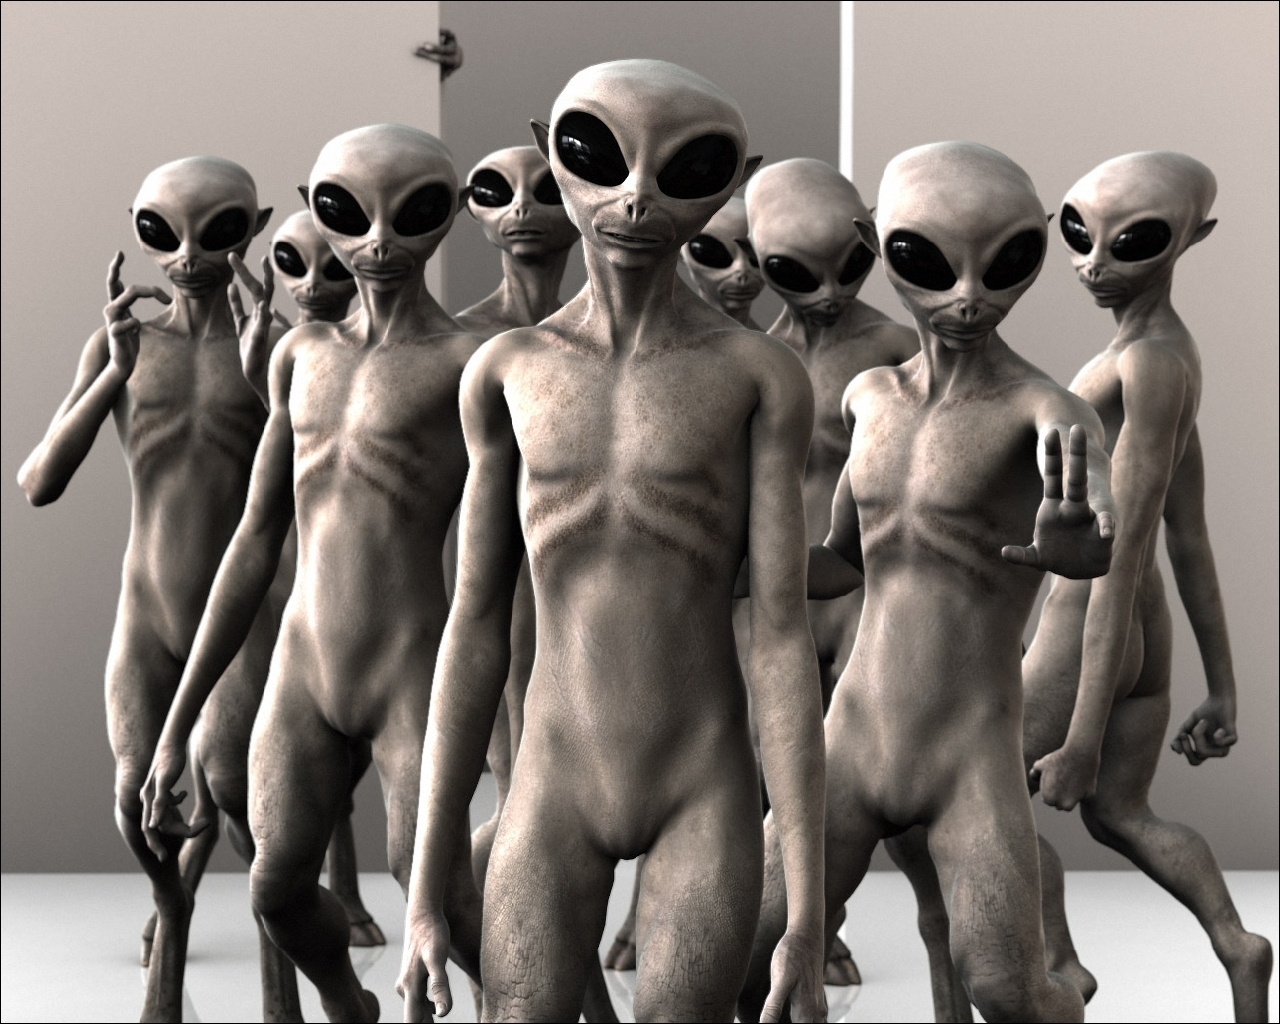 Los mejores fondos de pantalla de Ufo: Extraterrestrials para la pantalla del teléfono